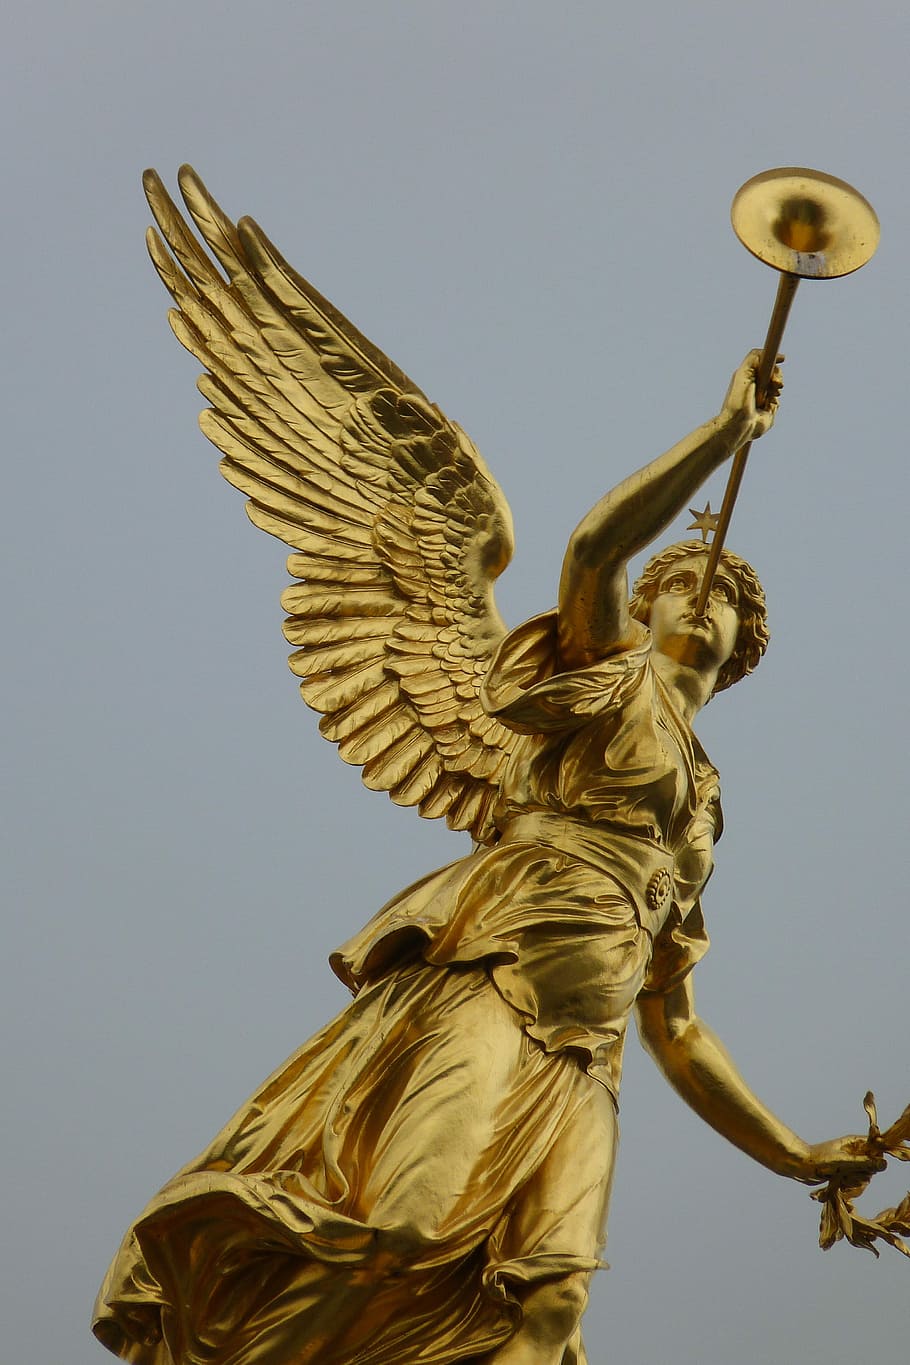 真鍮の天使, 管楽器の像, 真鍮, 天使, 管楽器, 像, ドレスデン, 市, ドイツ, 翼